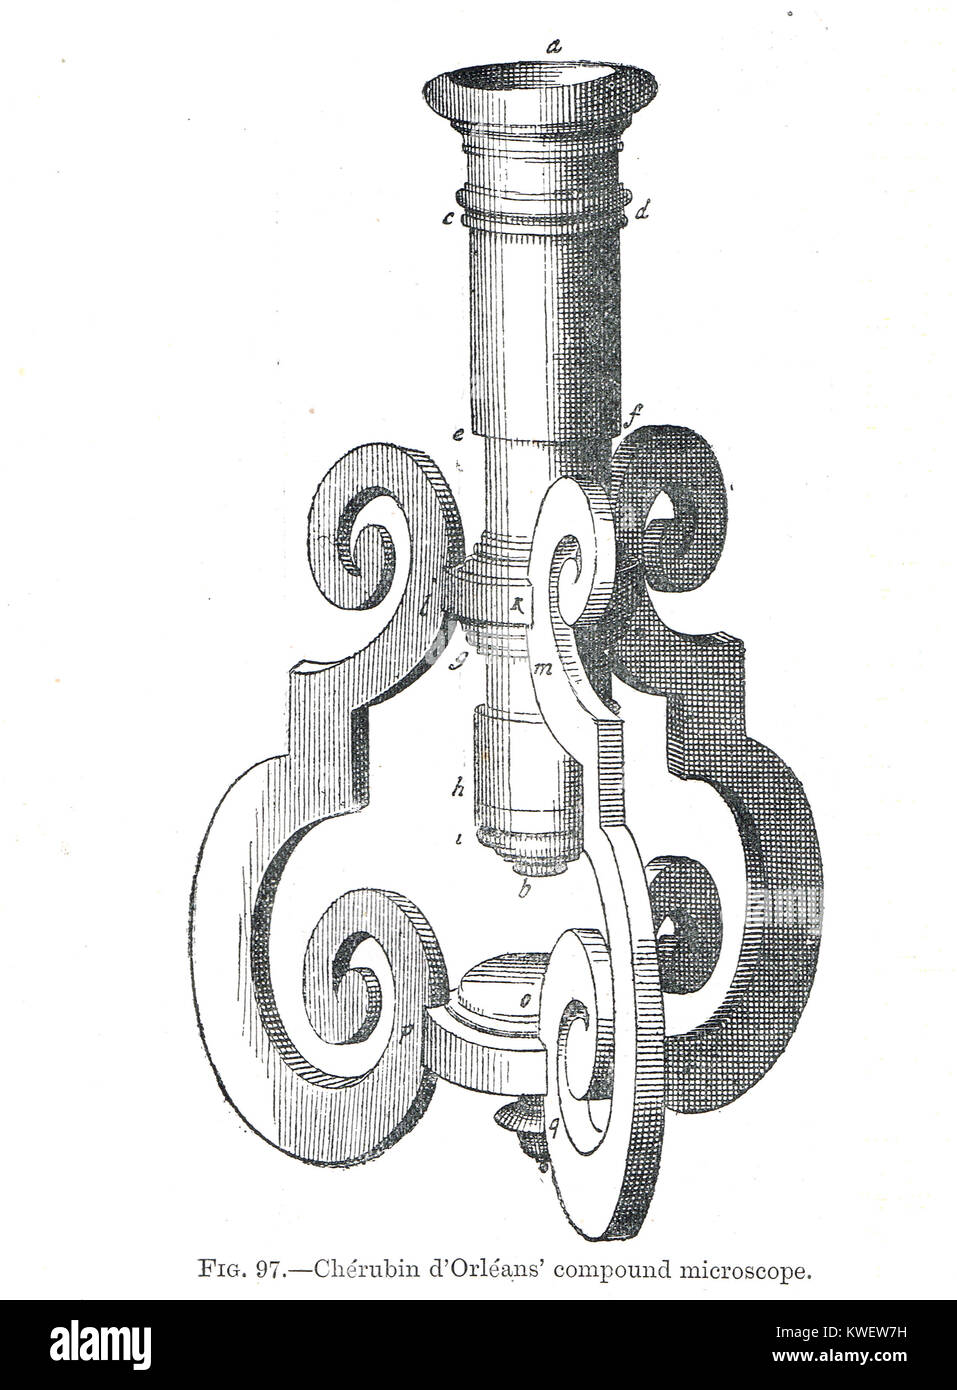 Microscopio composto da Chérubin d'Orléans Foto Stock